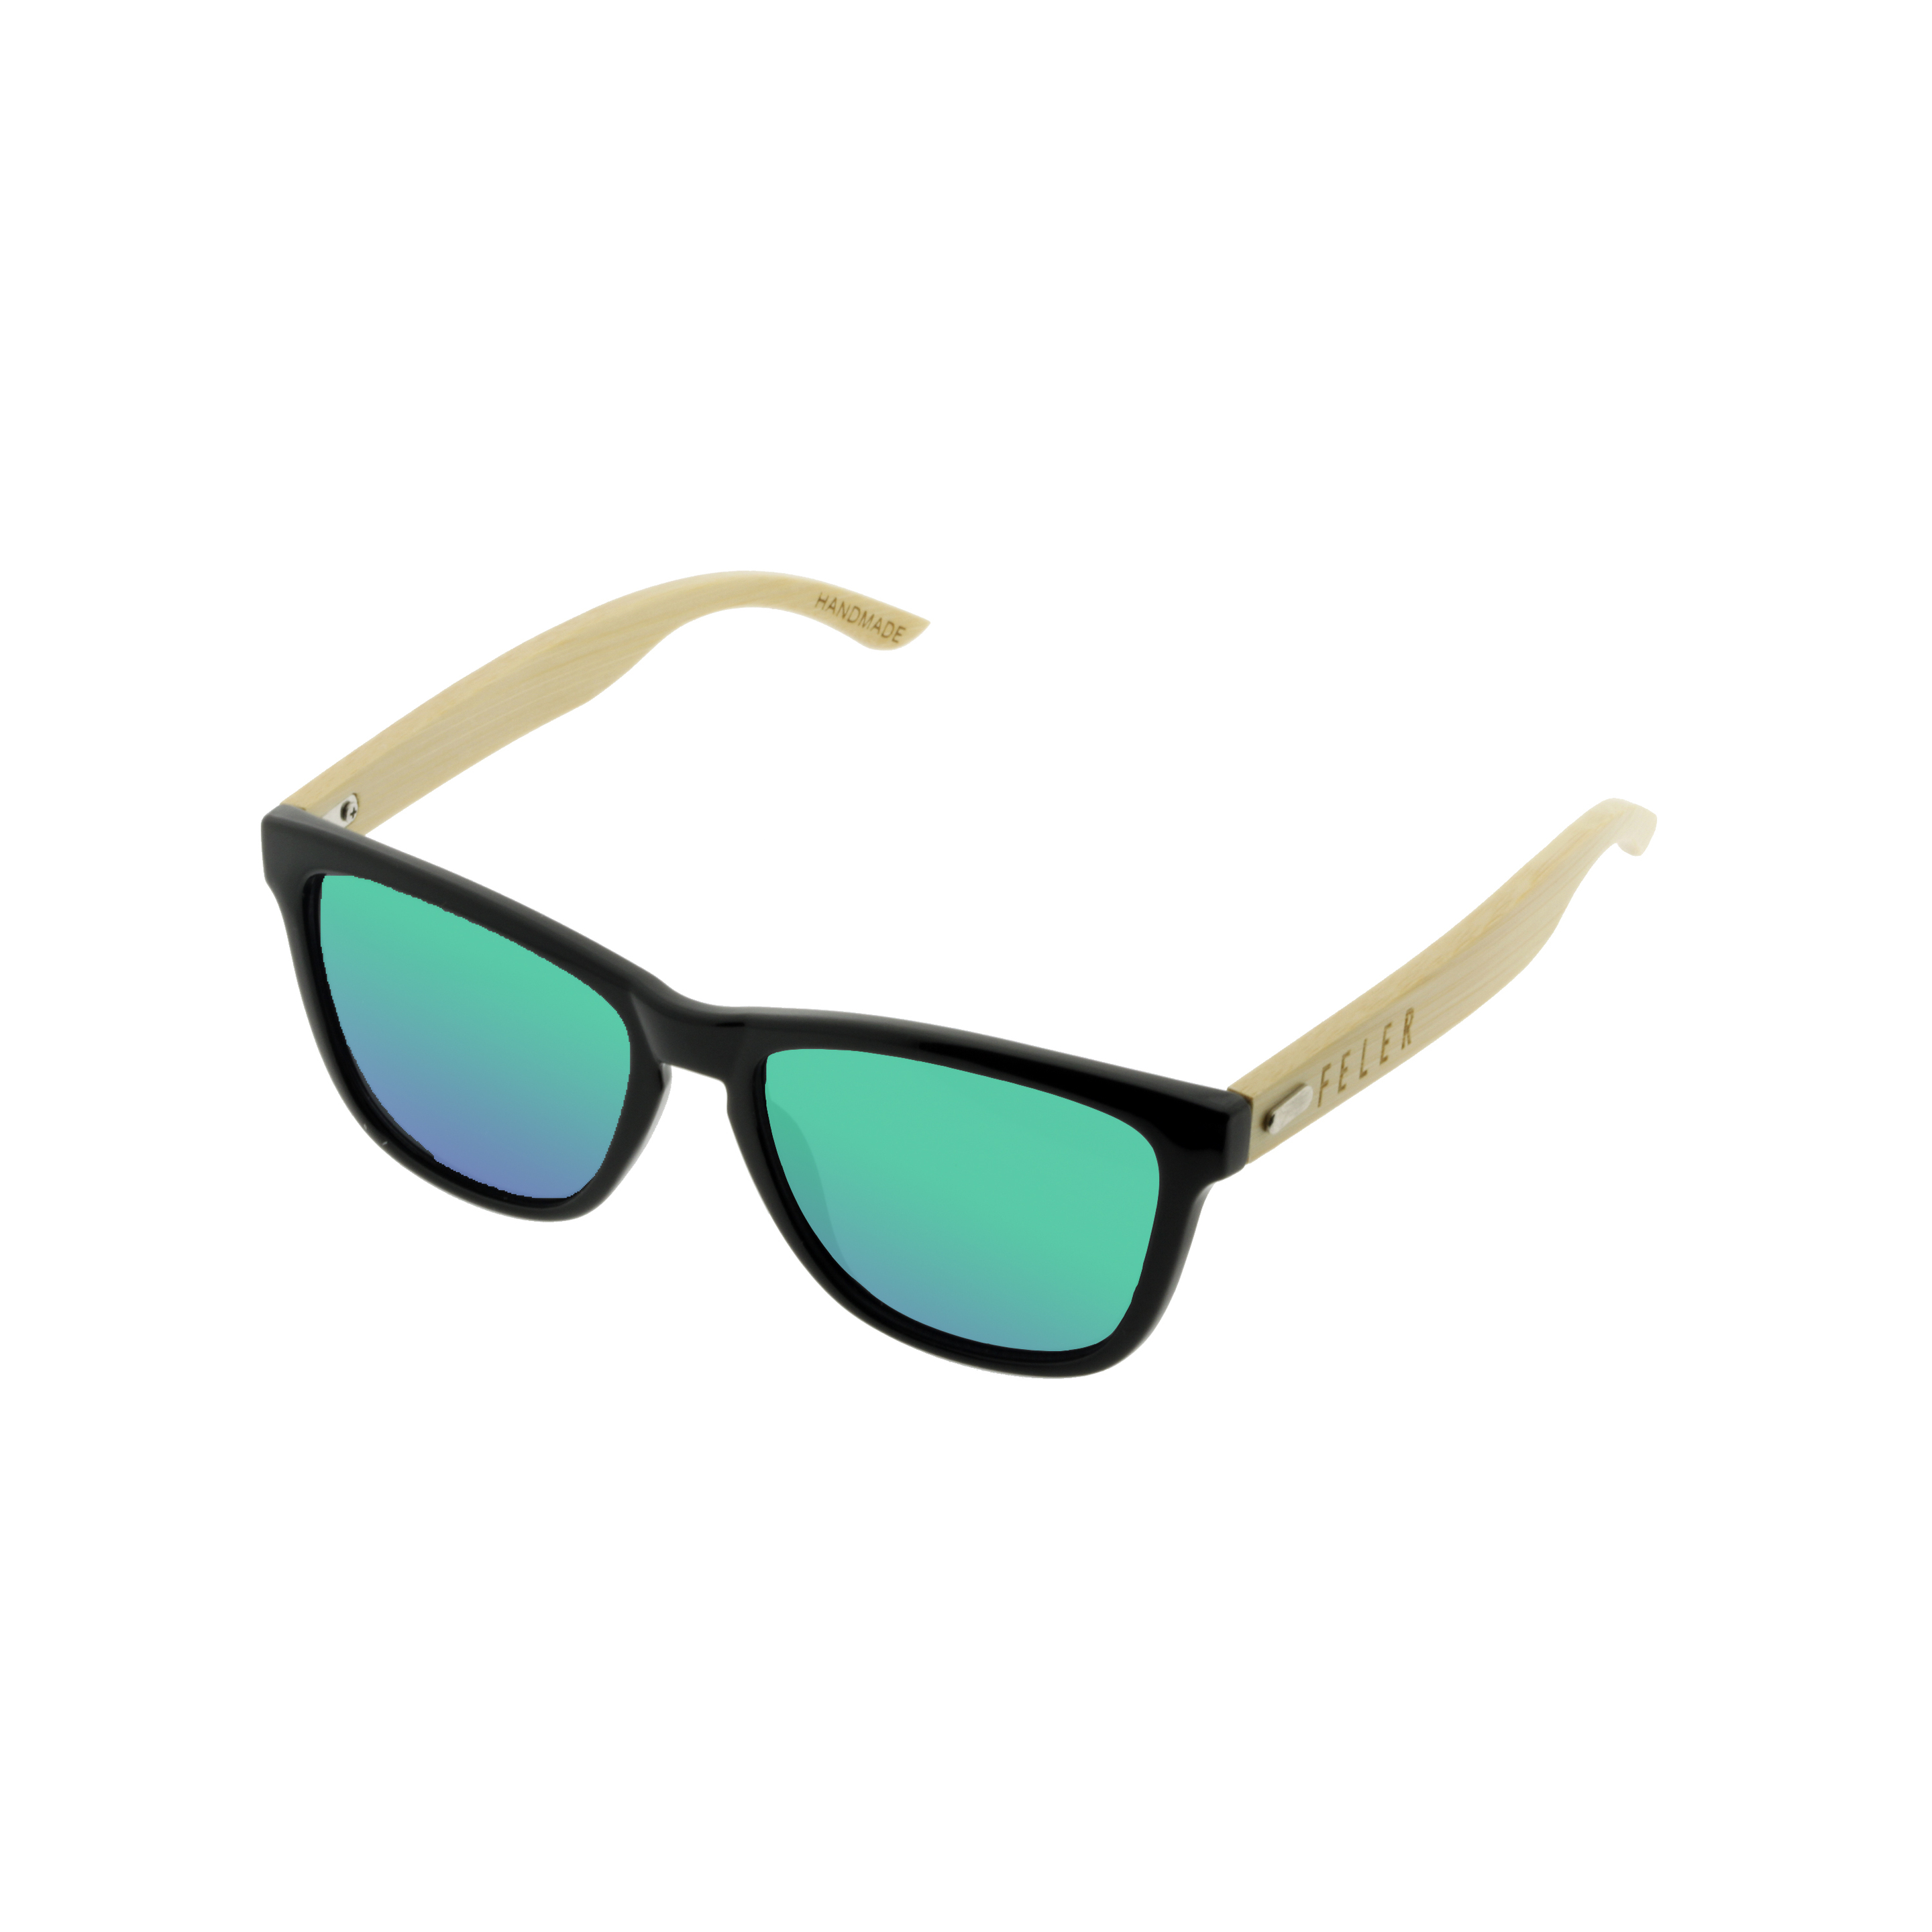 Gafas De Sol Feler | Regular Hibrid 3 - Verde - Cuadrada  MKP